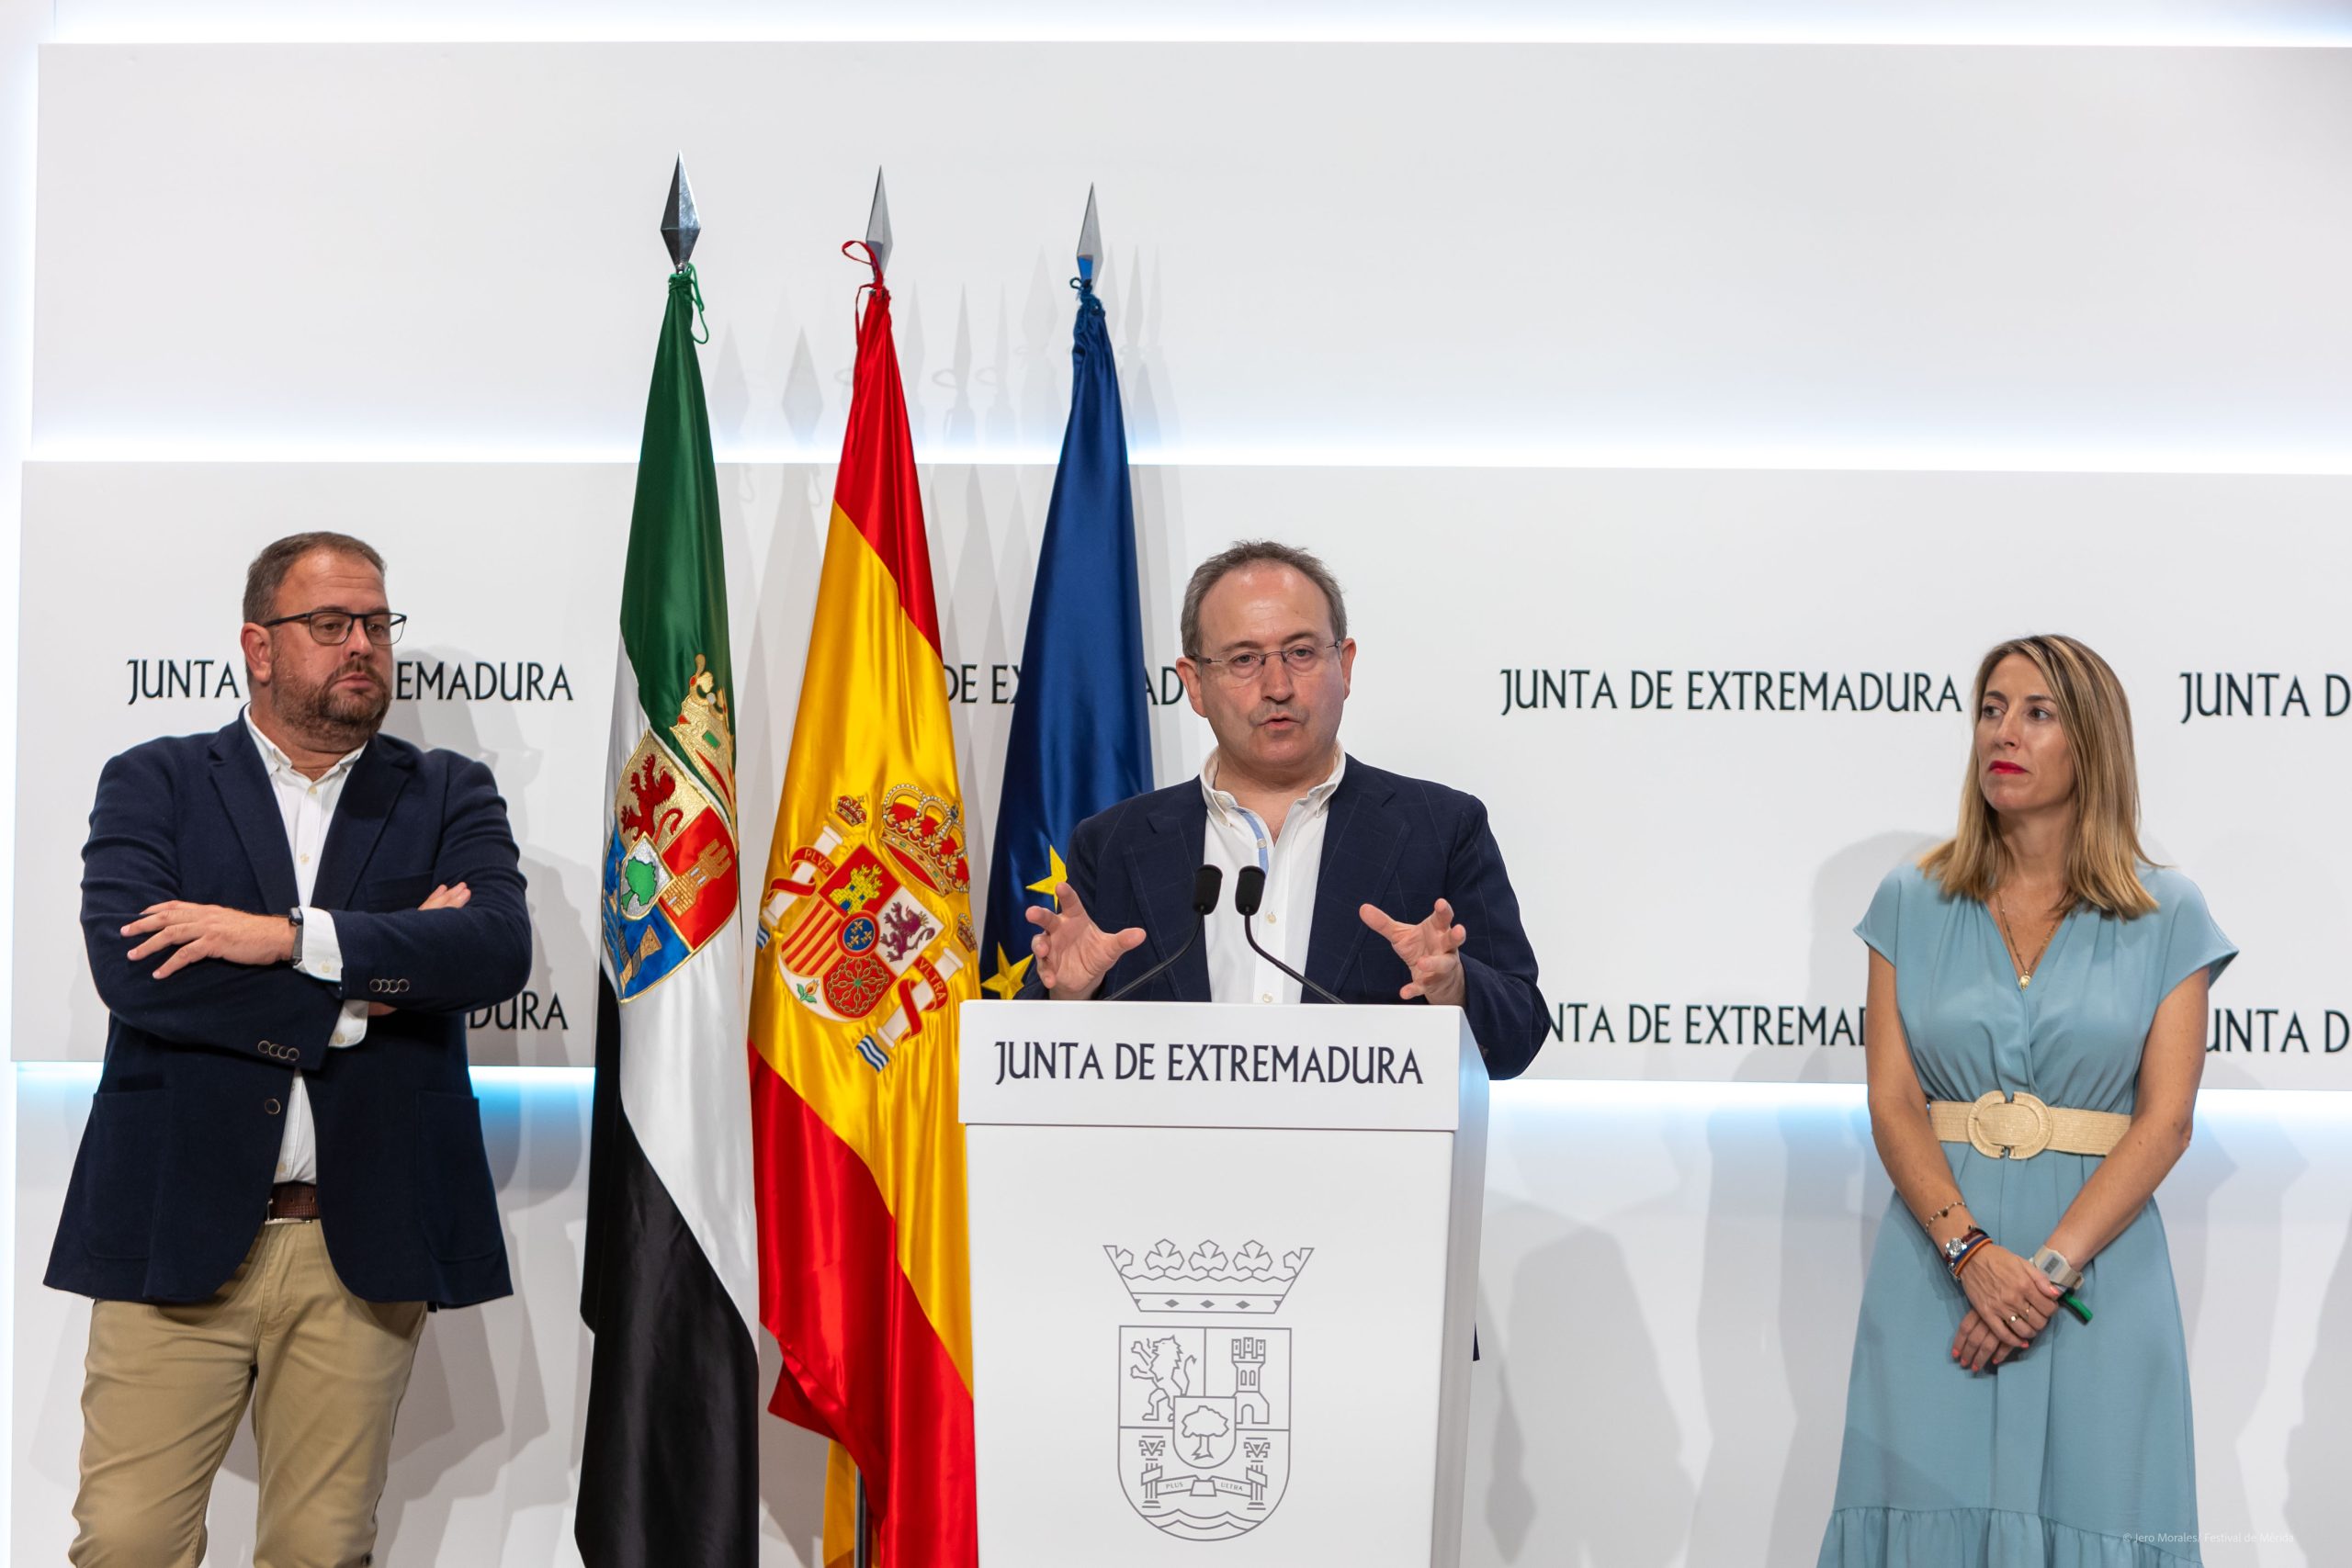 Intervención del director del festival, Jesús Cimarro, delante del alcalde de Mérida y Presidenta de la Junta de Extremadura